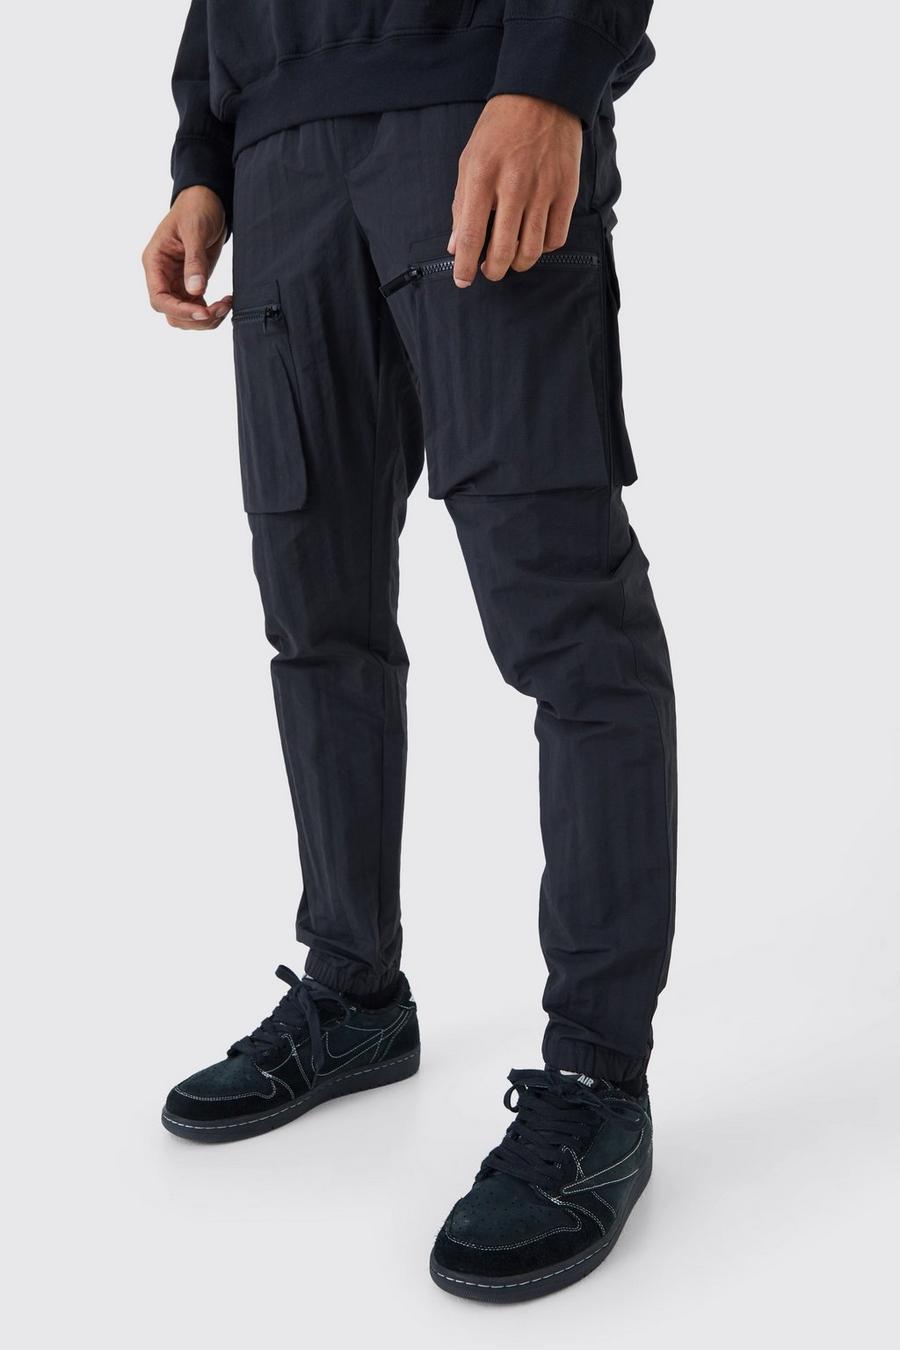 Black Elasticated Waist Slim Fit Crinkle Nylon Cargo Trouser